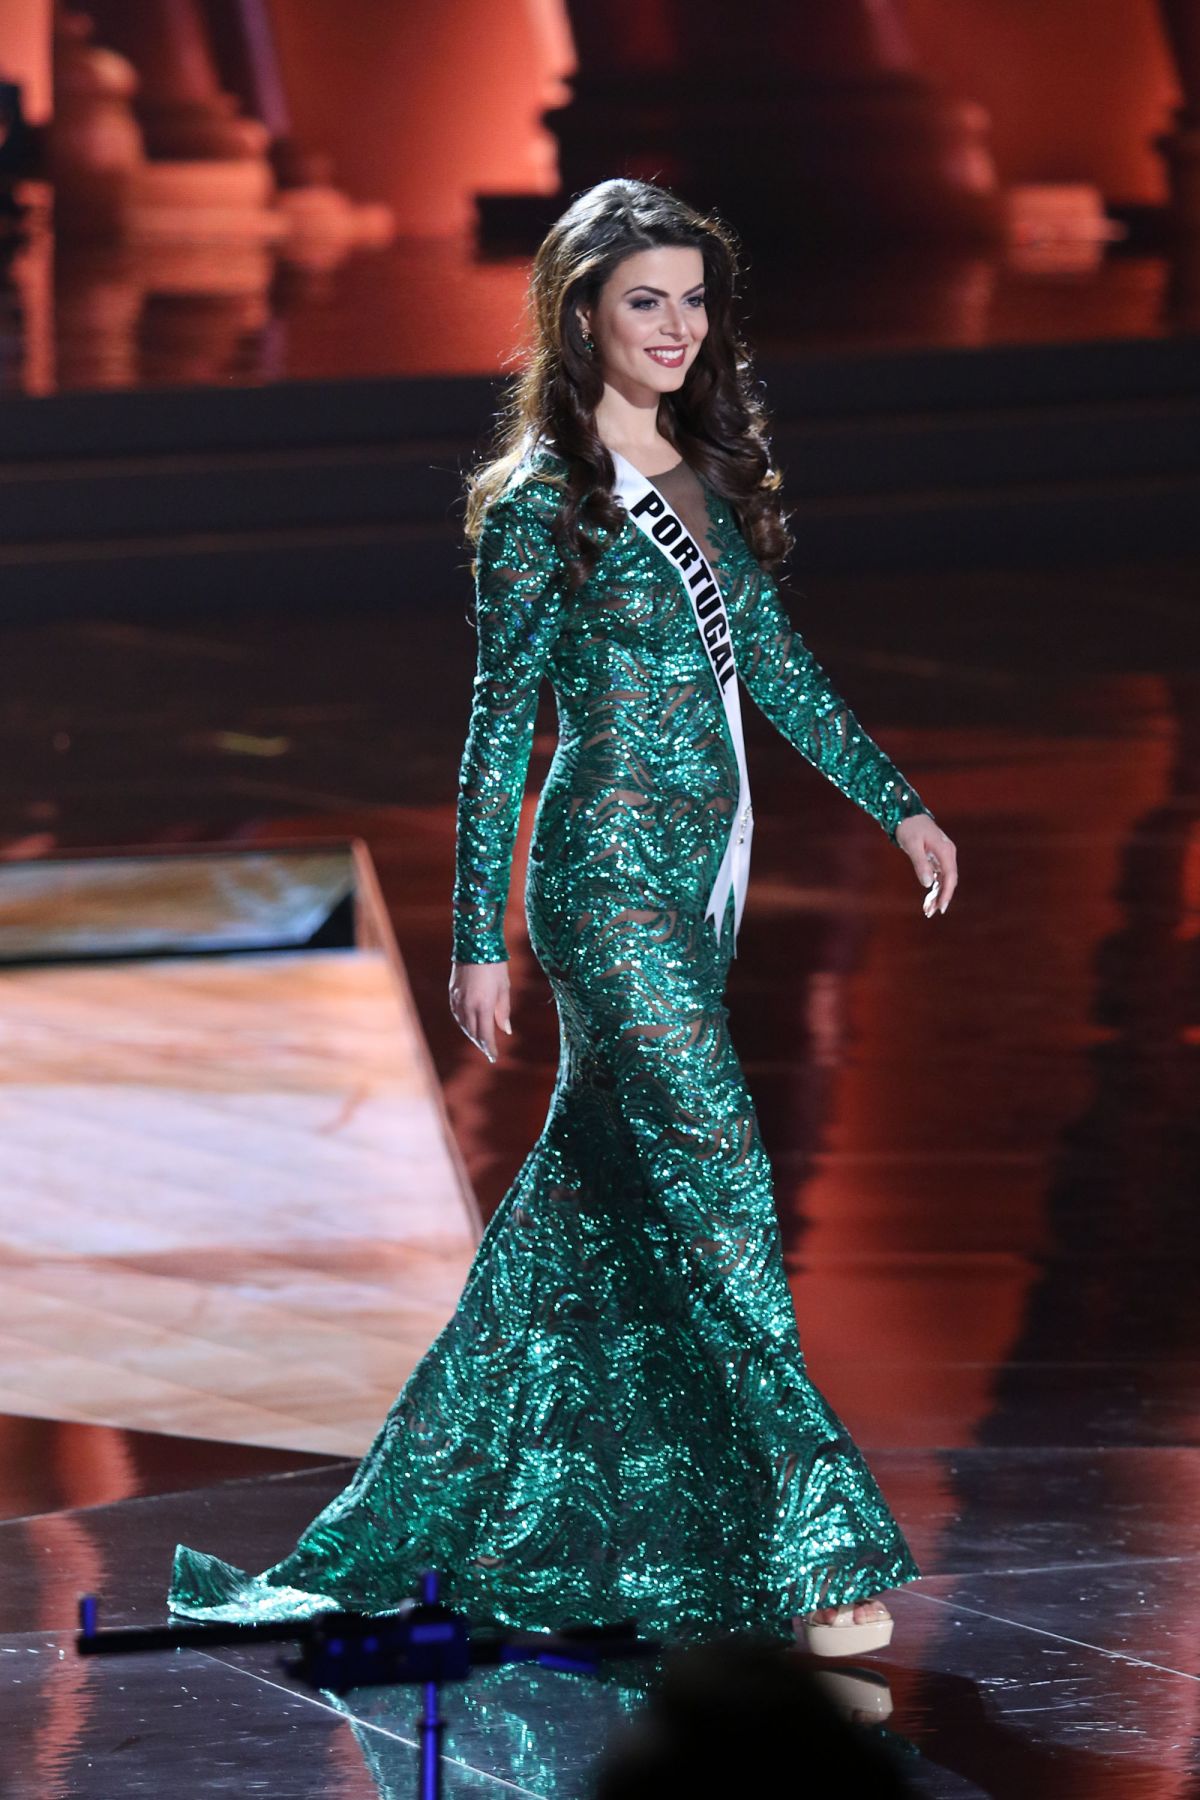 EMILIA ARAUJO - Miss Universe 2015 Preliminary Round 12/16/2015